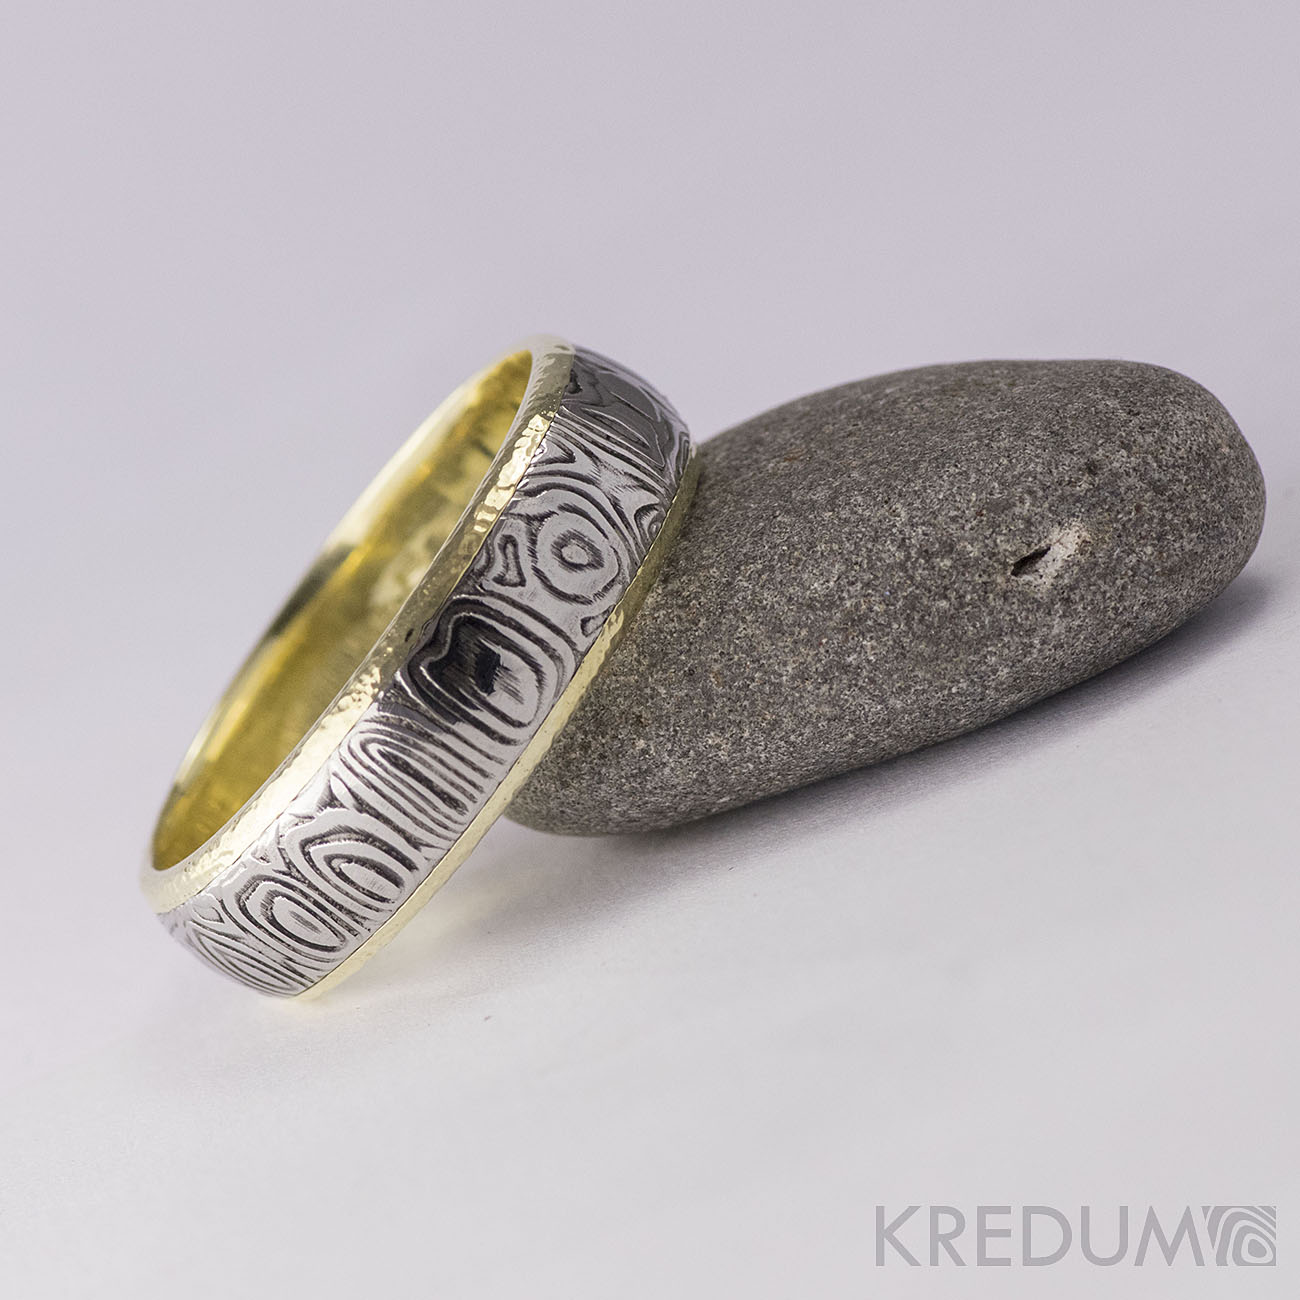 Pár nových prstenů v kombinaci damasteel a zlato, bílé zlato či stříbro - Obrázek č. 8